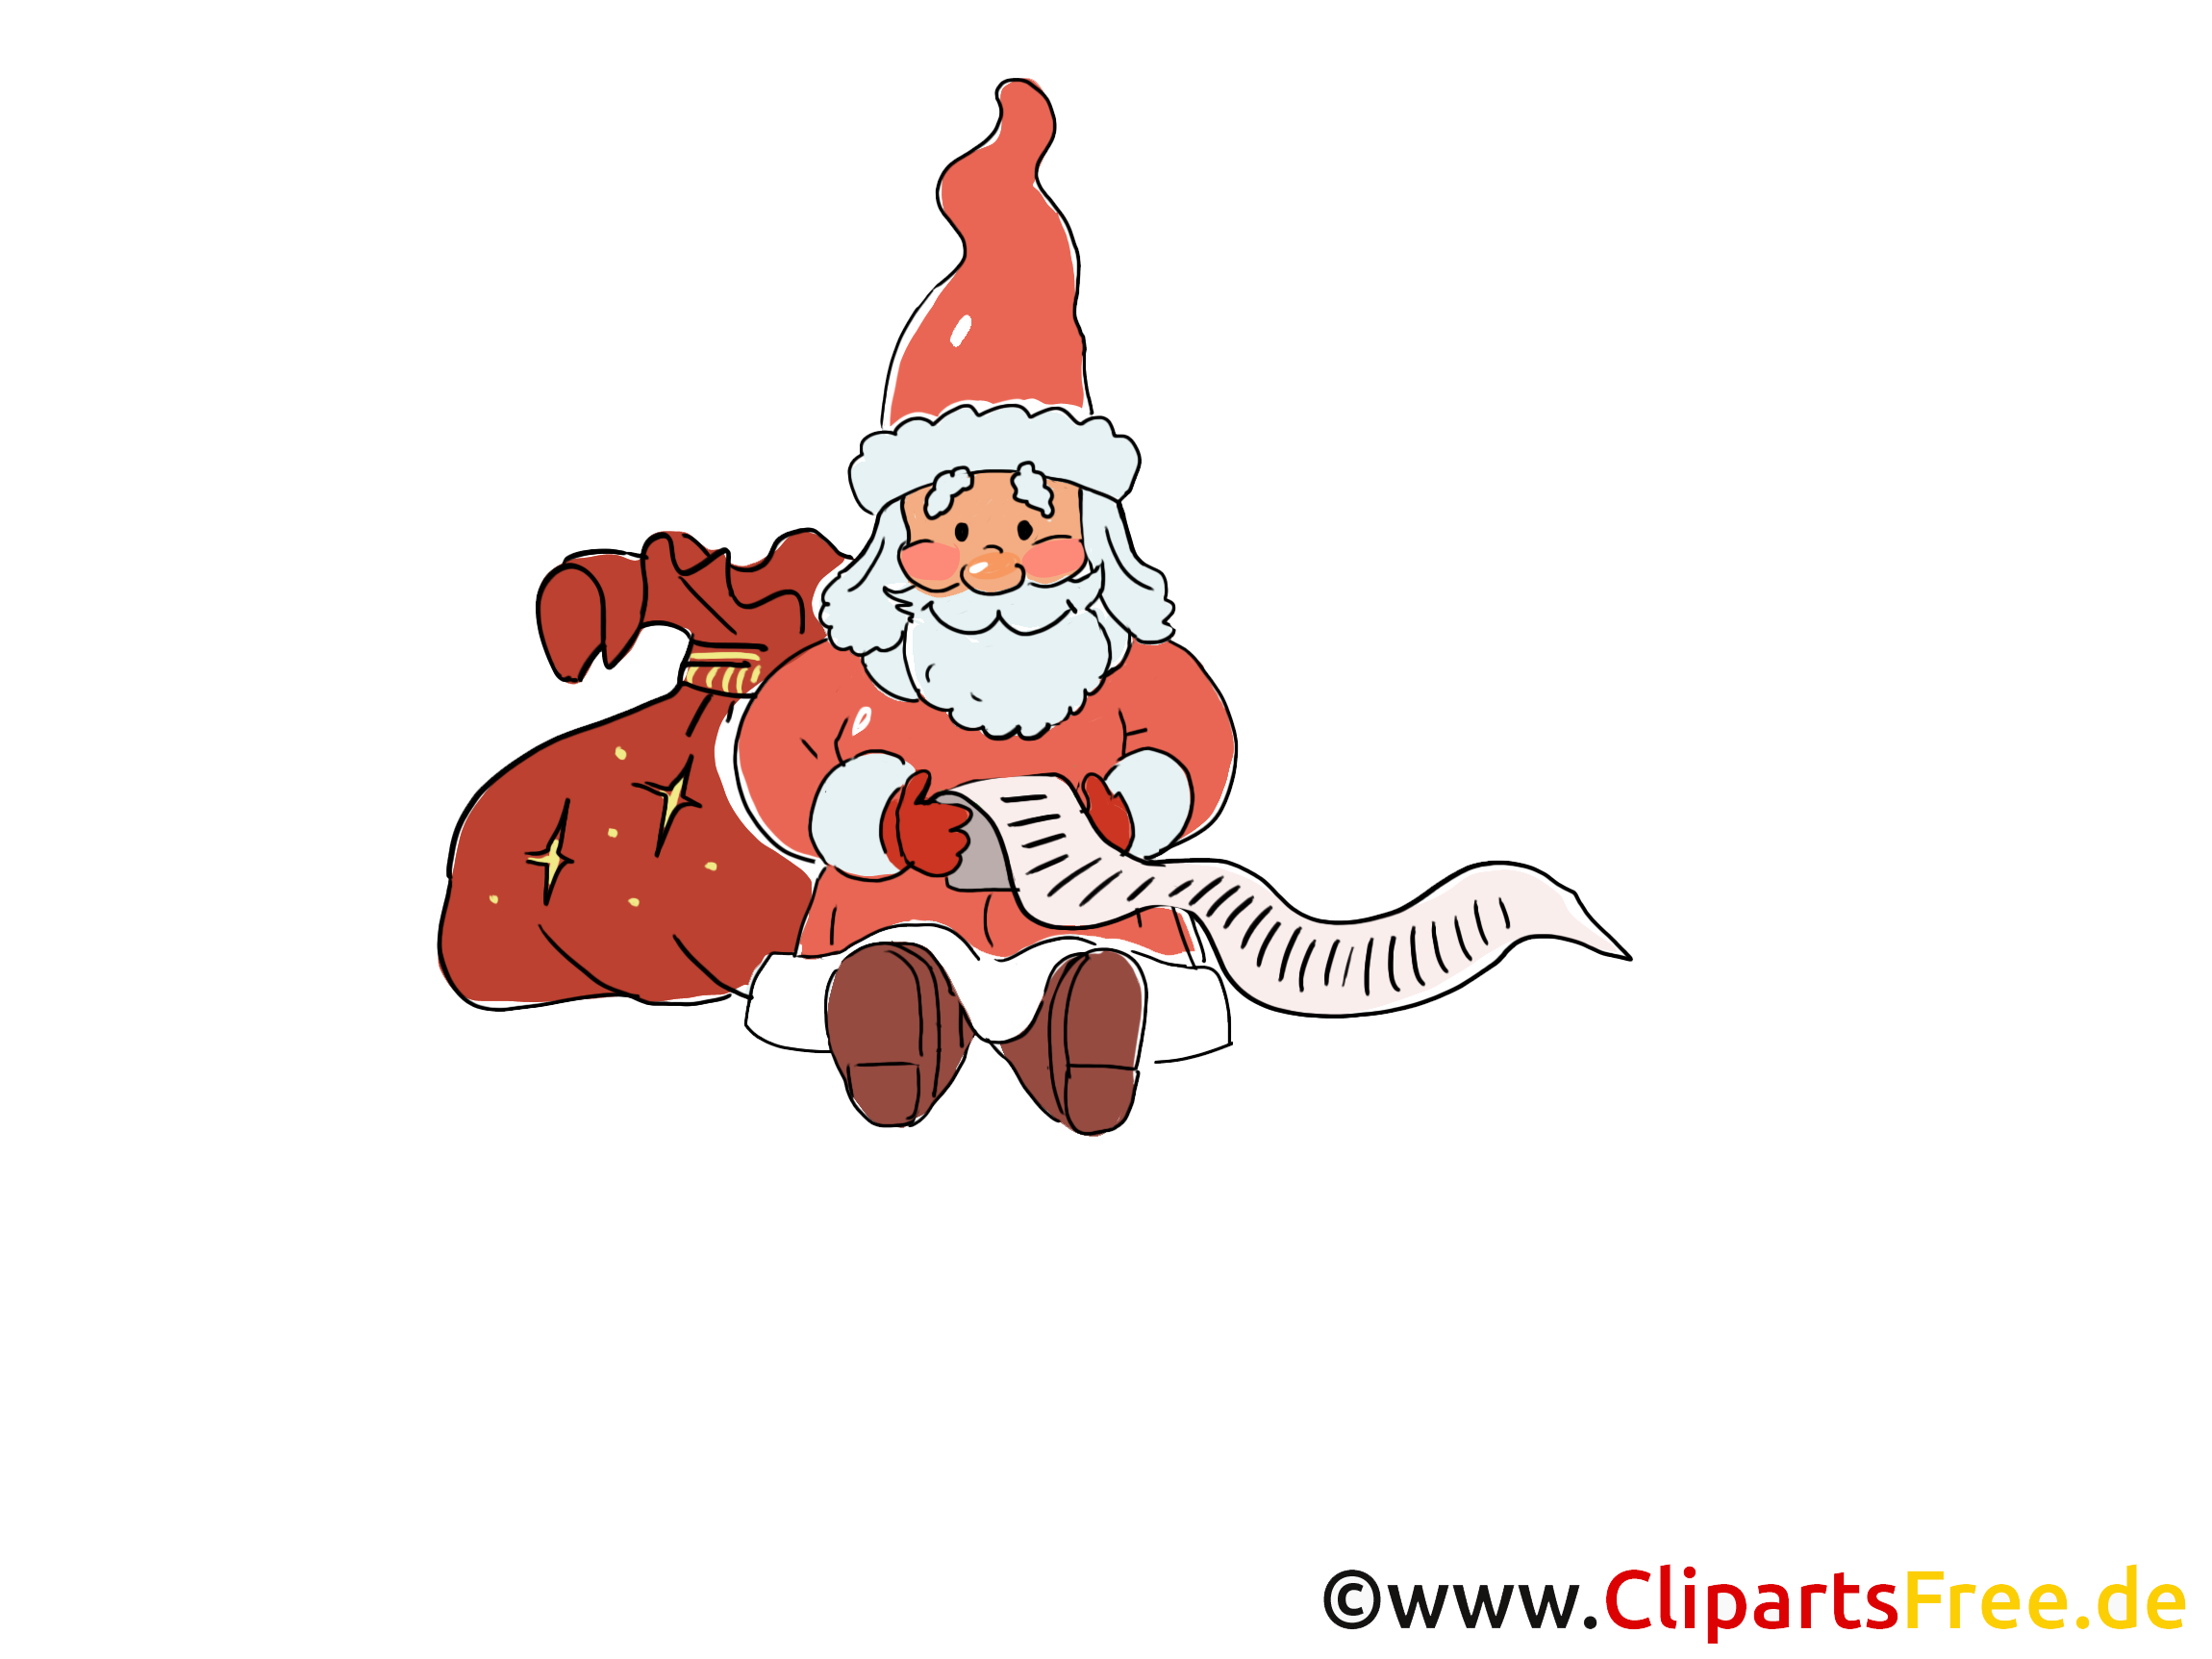 cliparts weihnachten kostenlos - photo #17